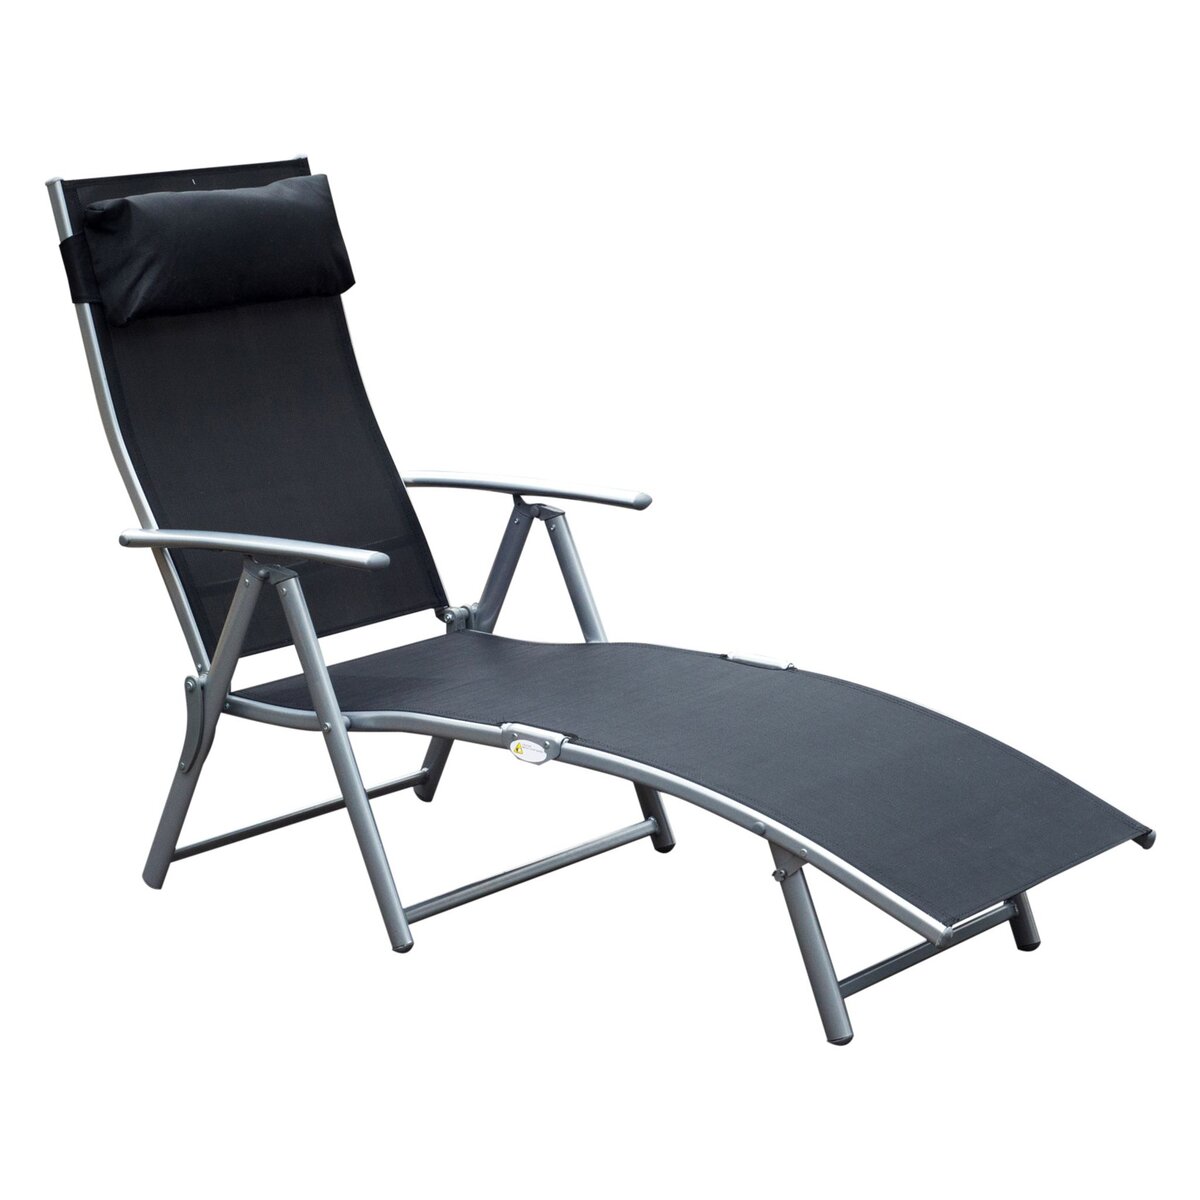 OUTSUNNY Outsunny transat chaise longue bain de soleil pliable dossier inclinable multi-positions têtière fournie 137L x 64l x 101H cm métal époxy textilène noir